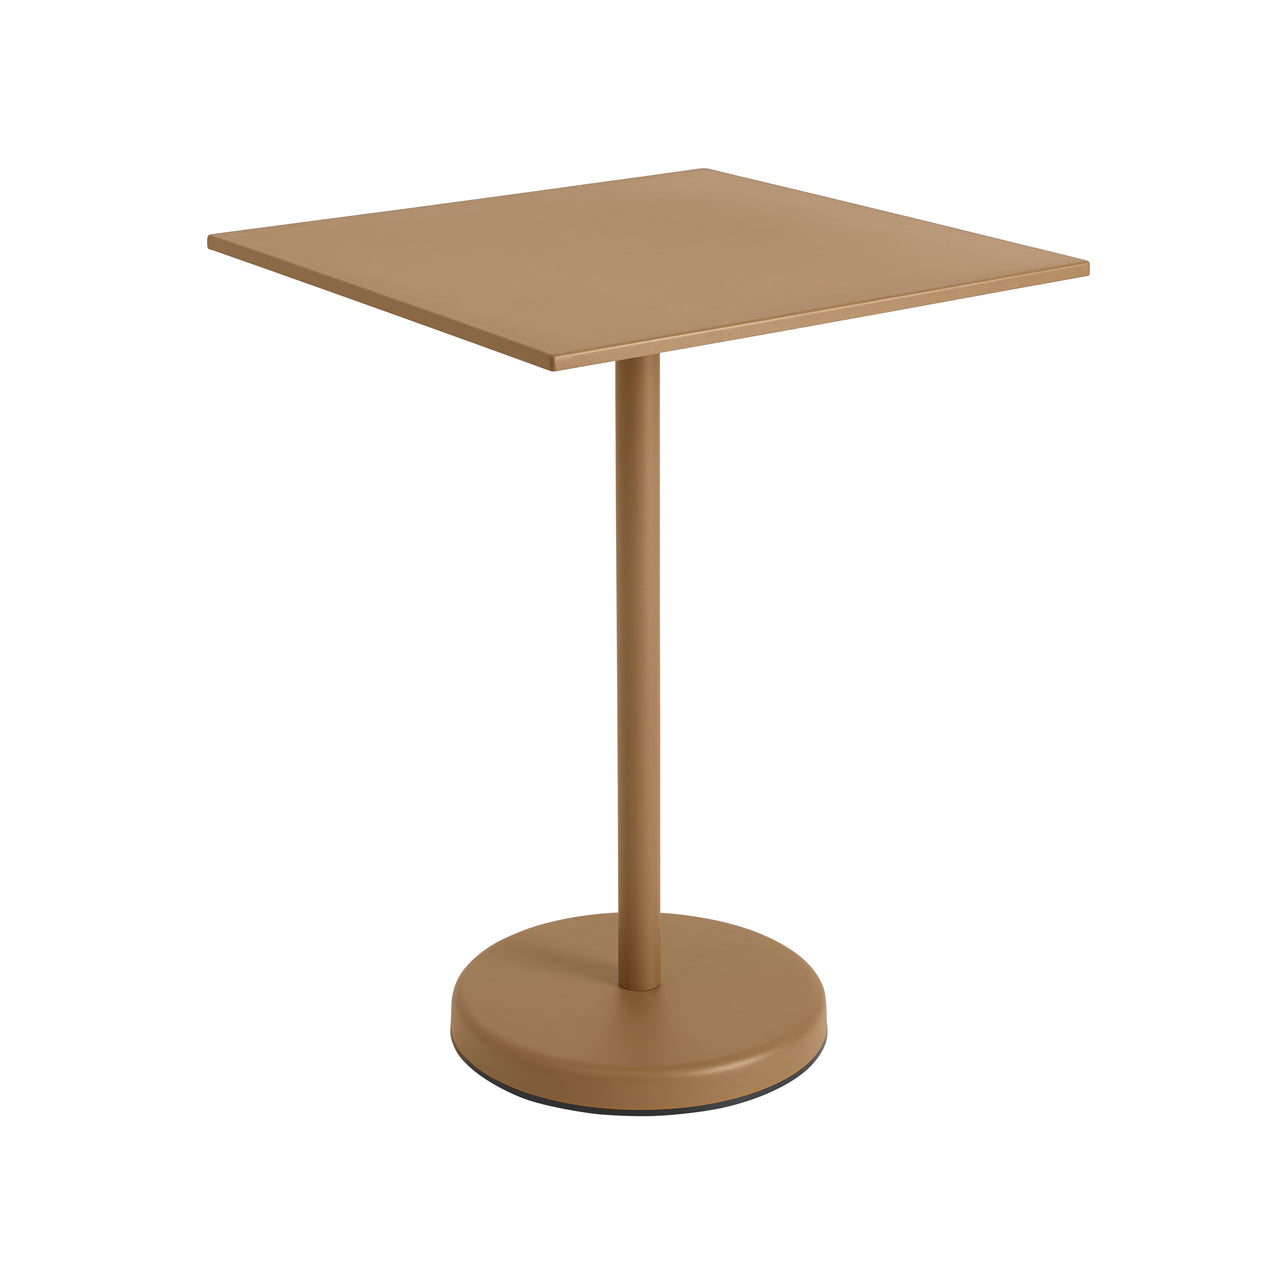 Linear Steel Café Table: Medium - 37.4